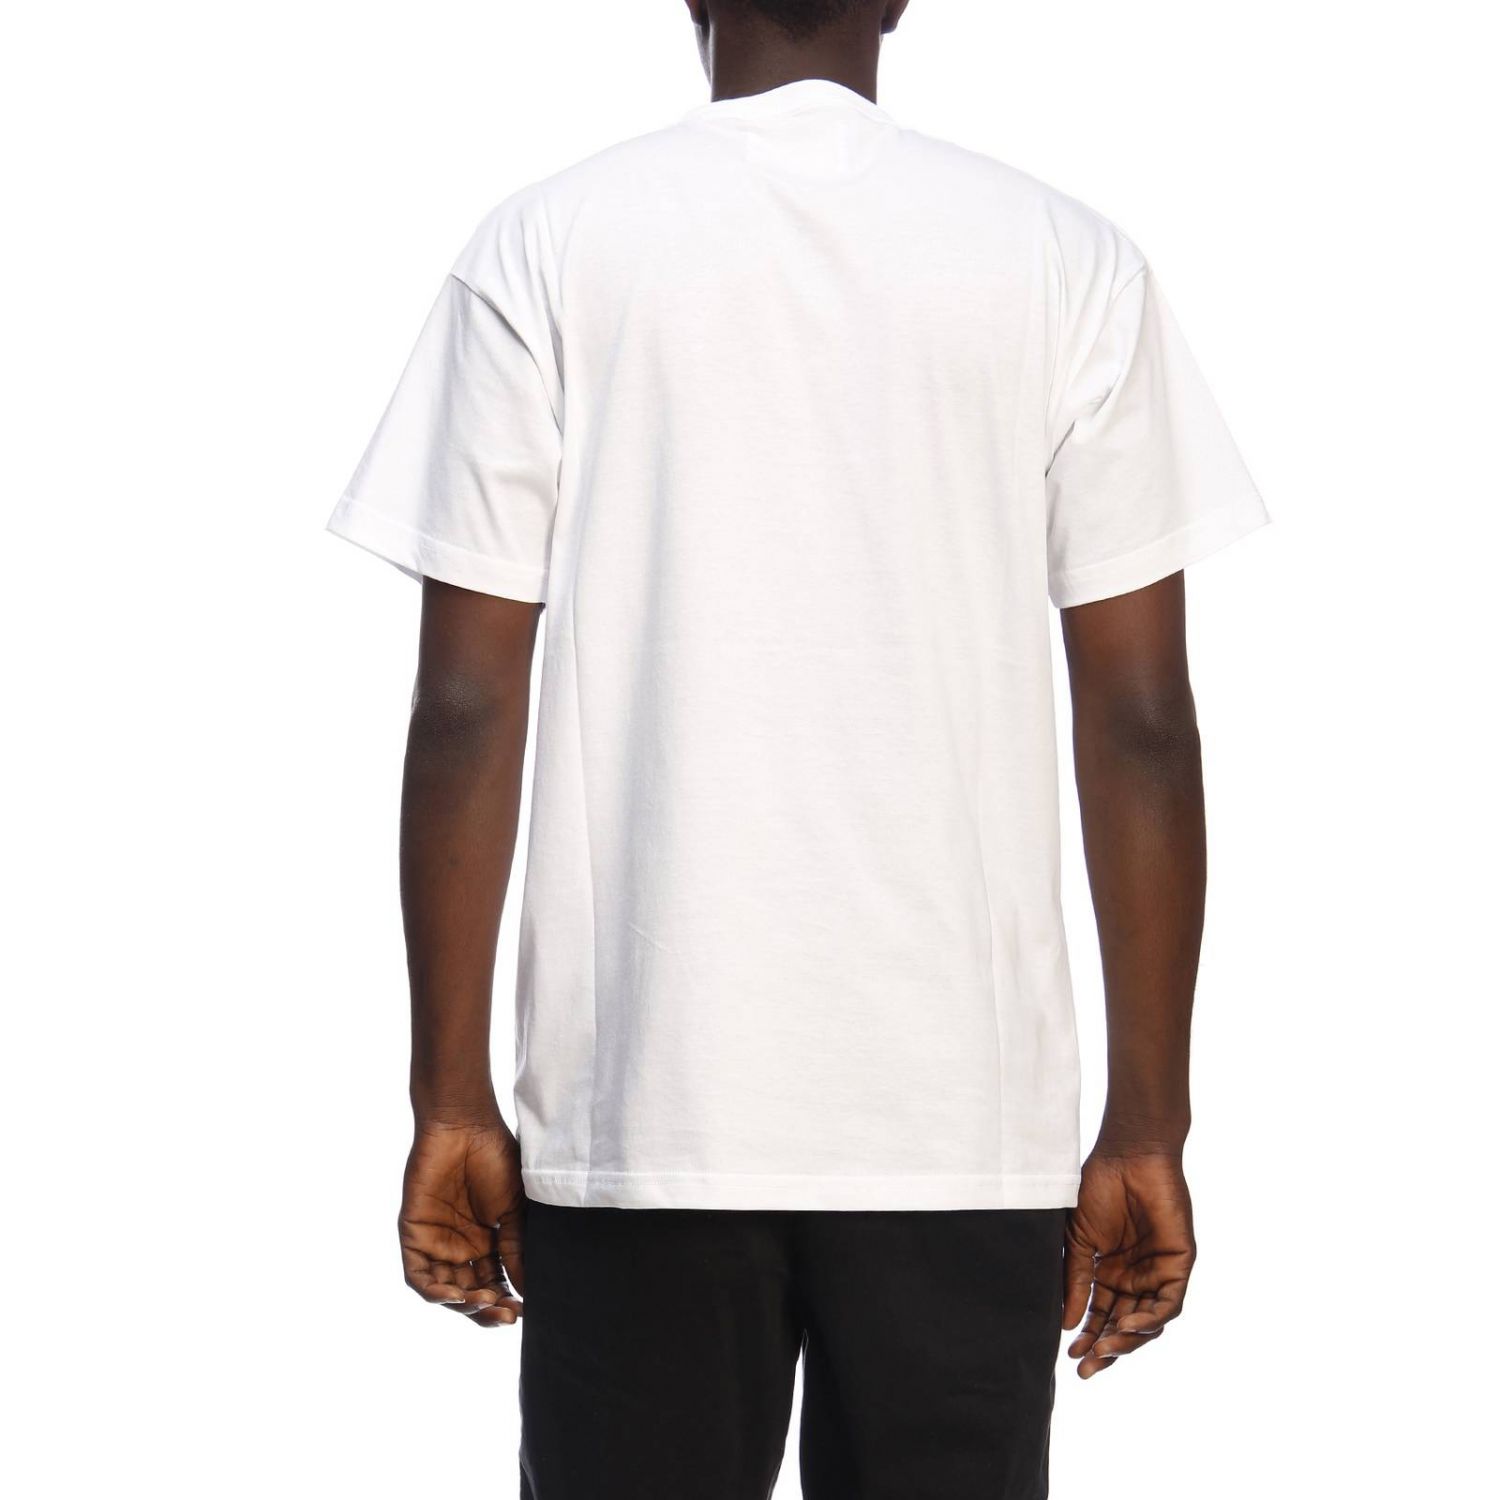 Iceberg Outlet: T-shirt men | T-Shirt Iceberg Men White | T-Shirt ...